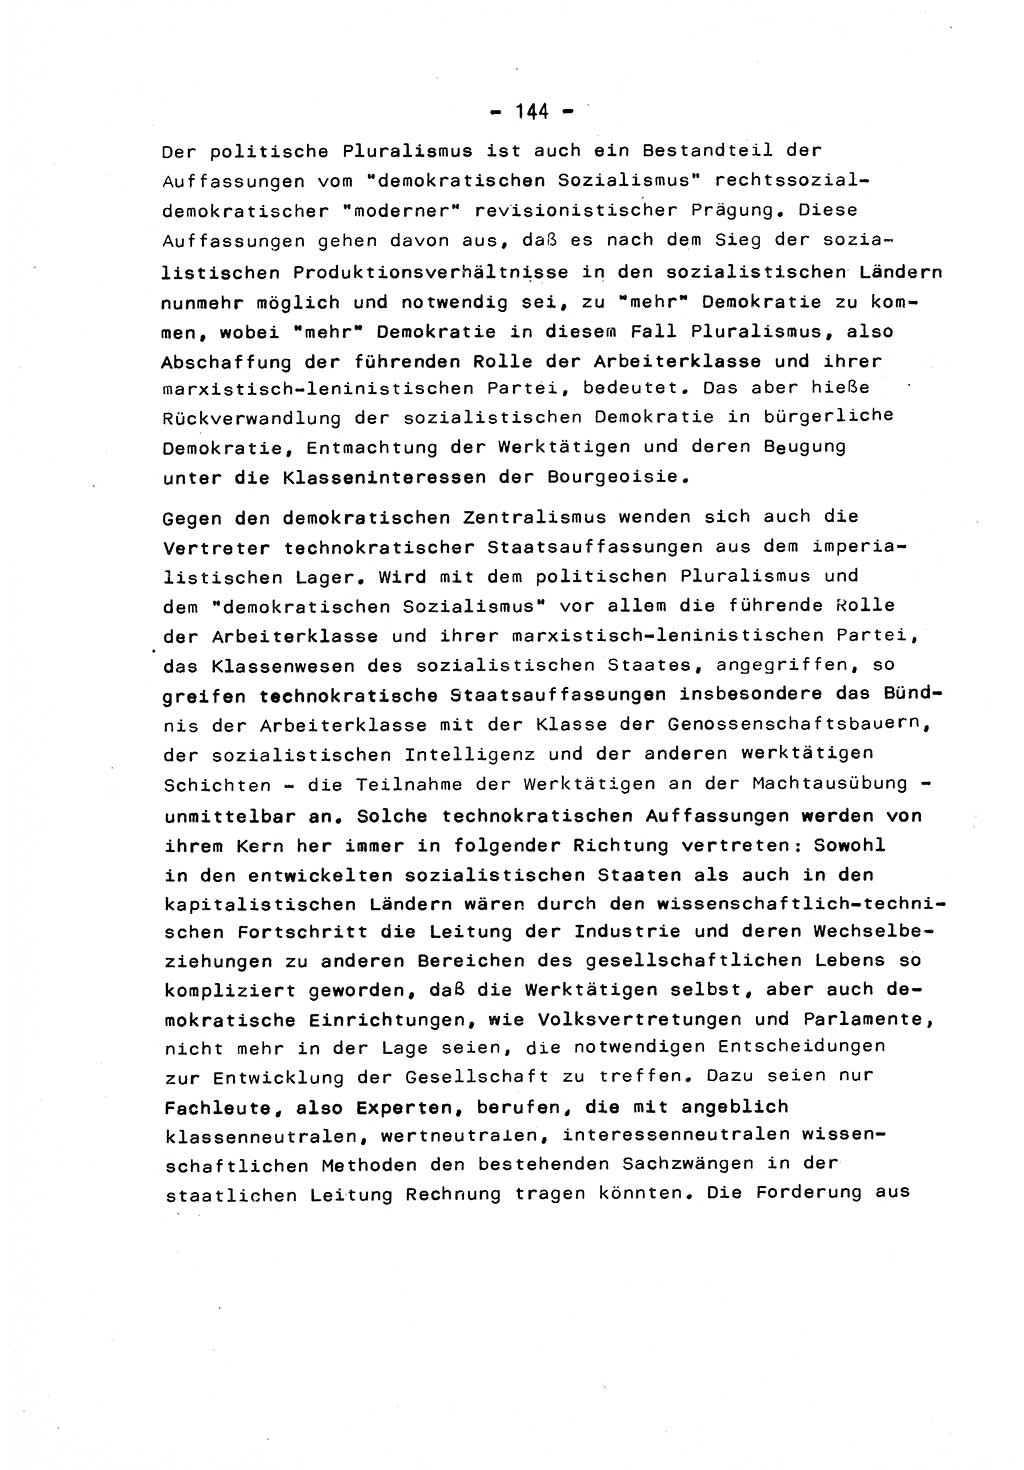 Marxistisch-leninistische Staats- und Rechtstheorie [Deutsche Demokratische Republik (DDR)] 1975, Seite 144 (ML St.-R.-Th. DDR 1975, S. 144)